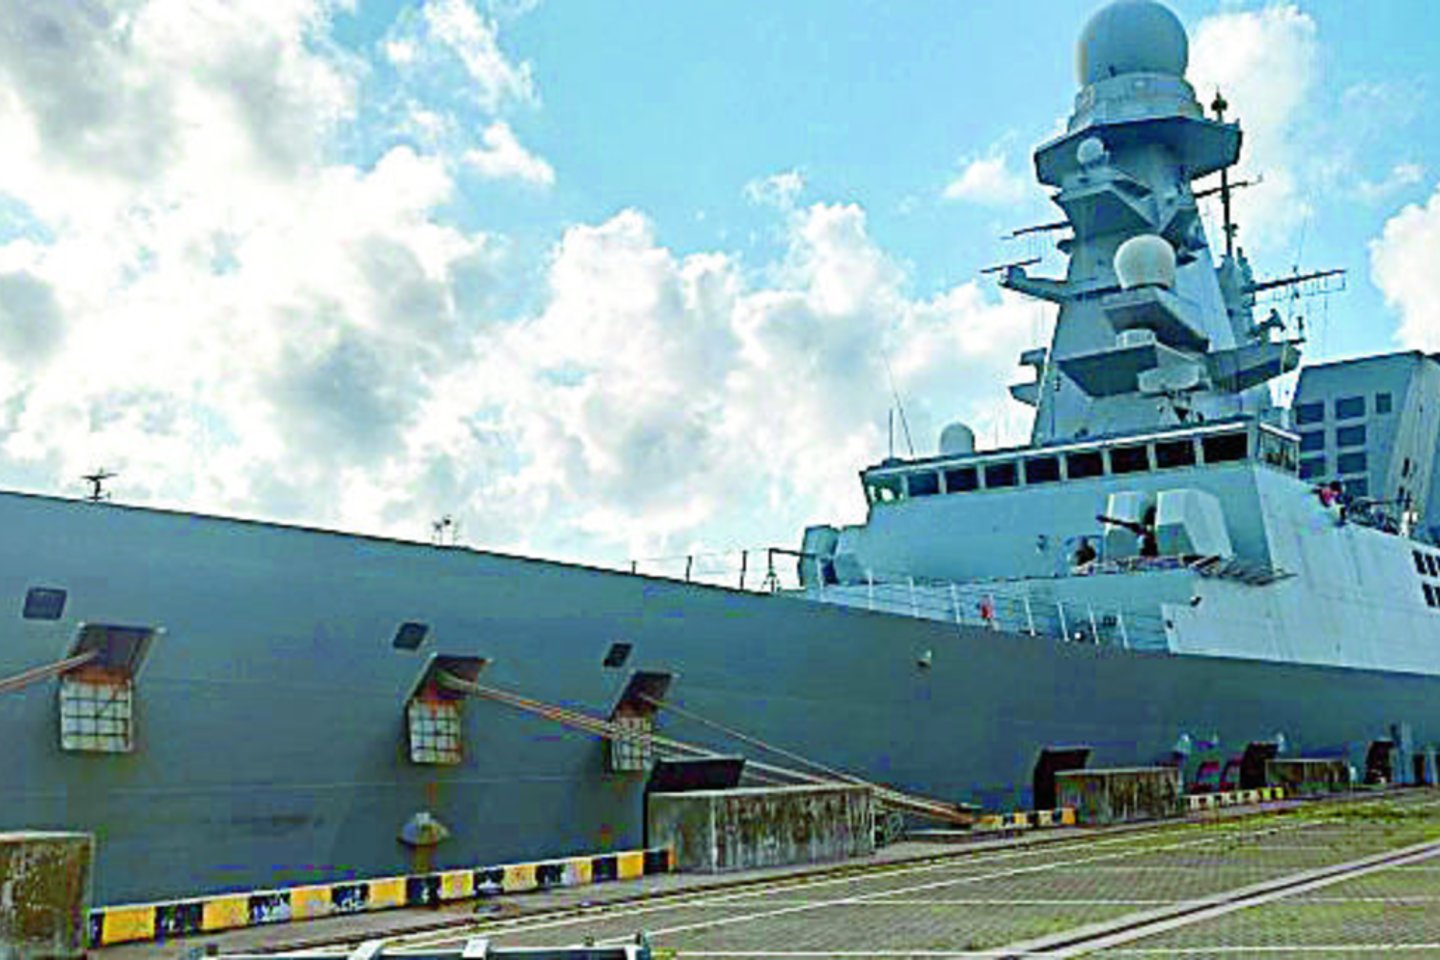  Liepos 2–6 d. Klaipėdos jūrų uoste lankėsi Italijos karinių jūrų pajėgų kovinis laivas „Caio Duilio“.